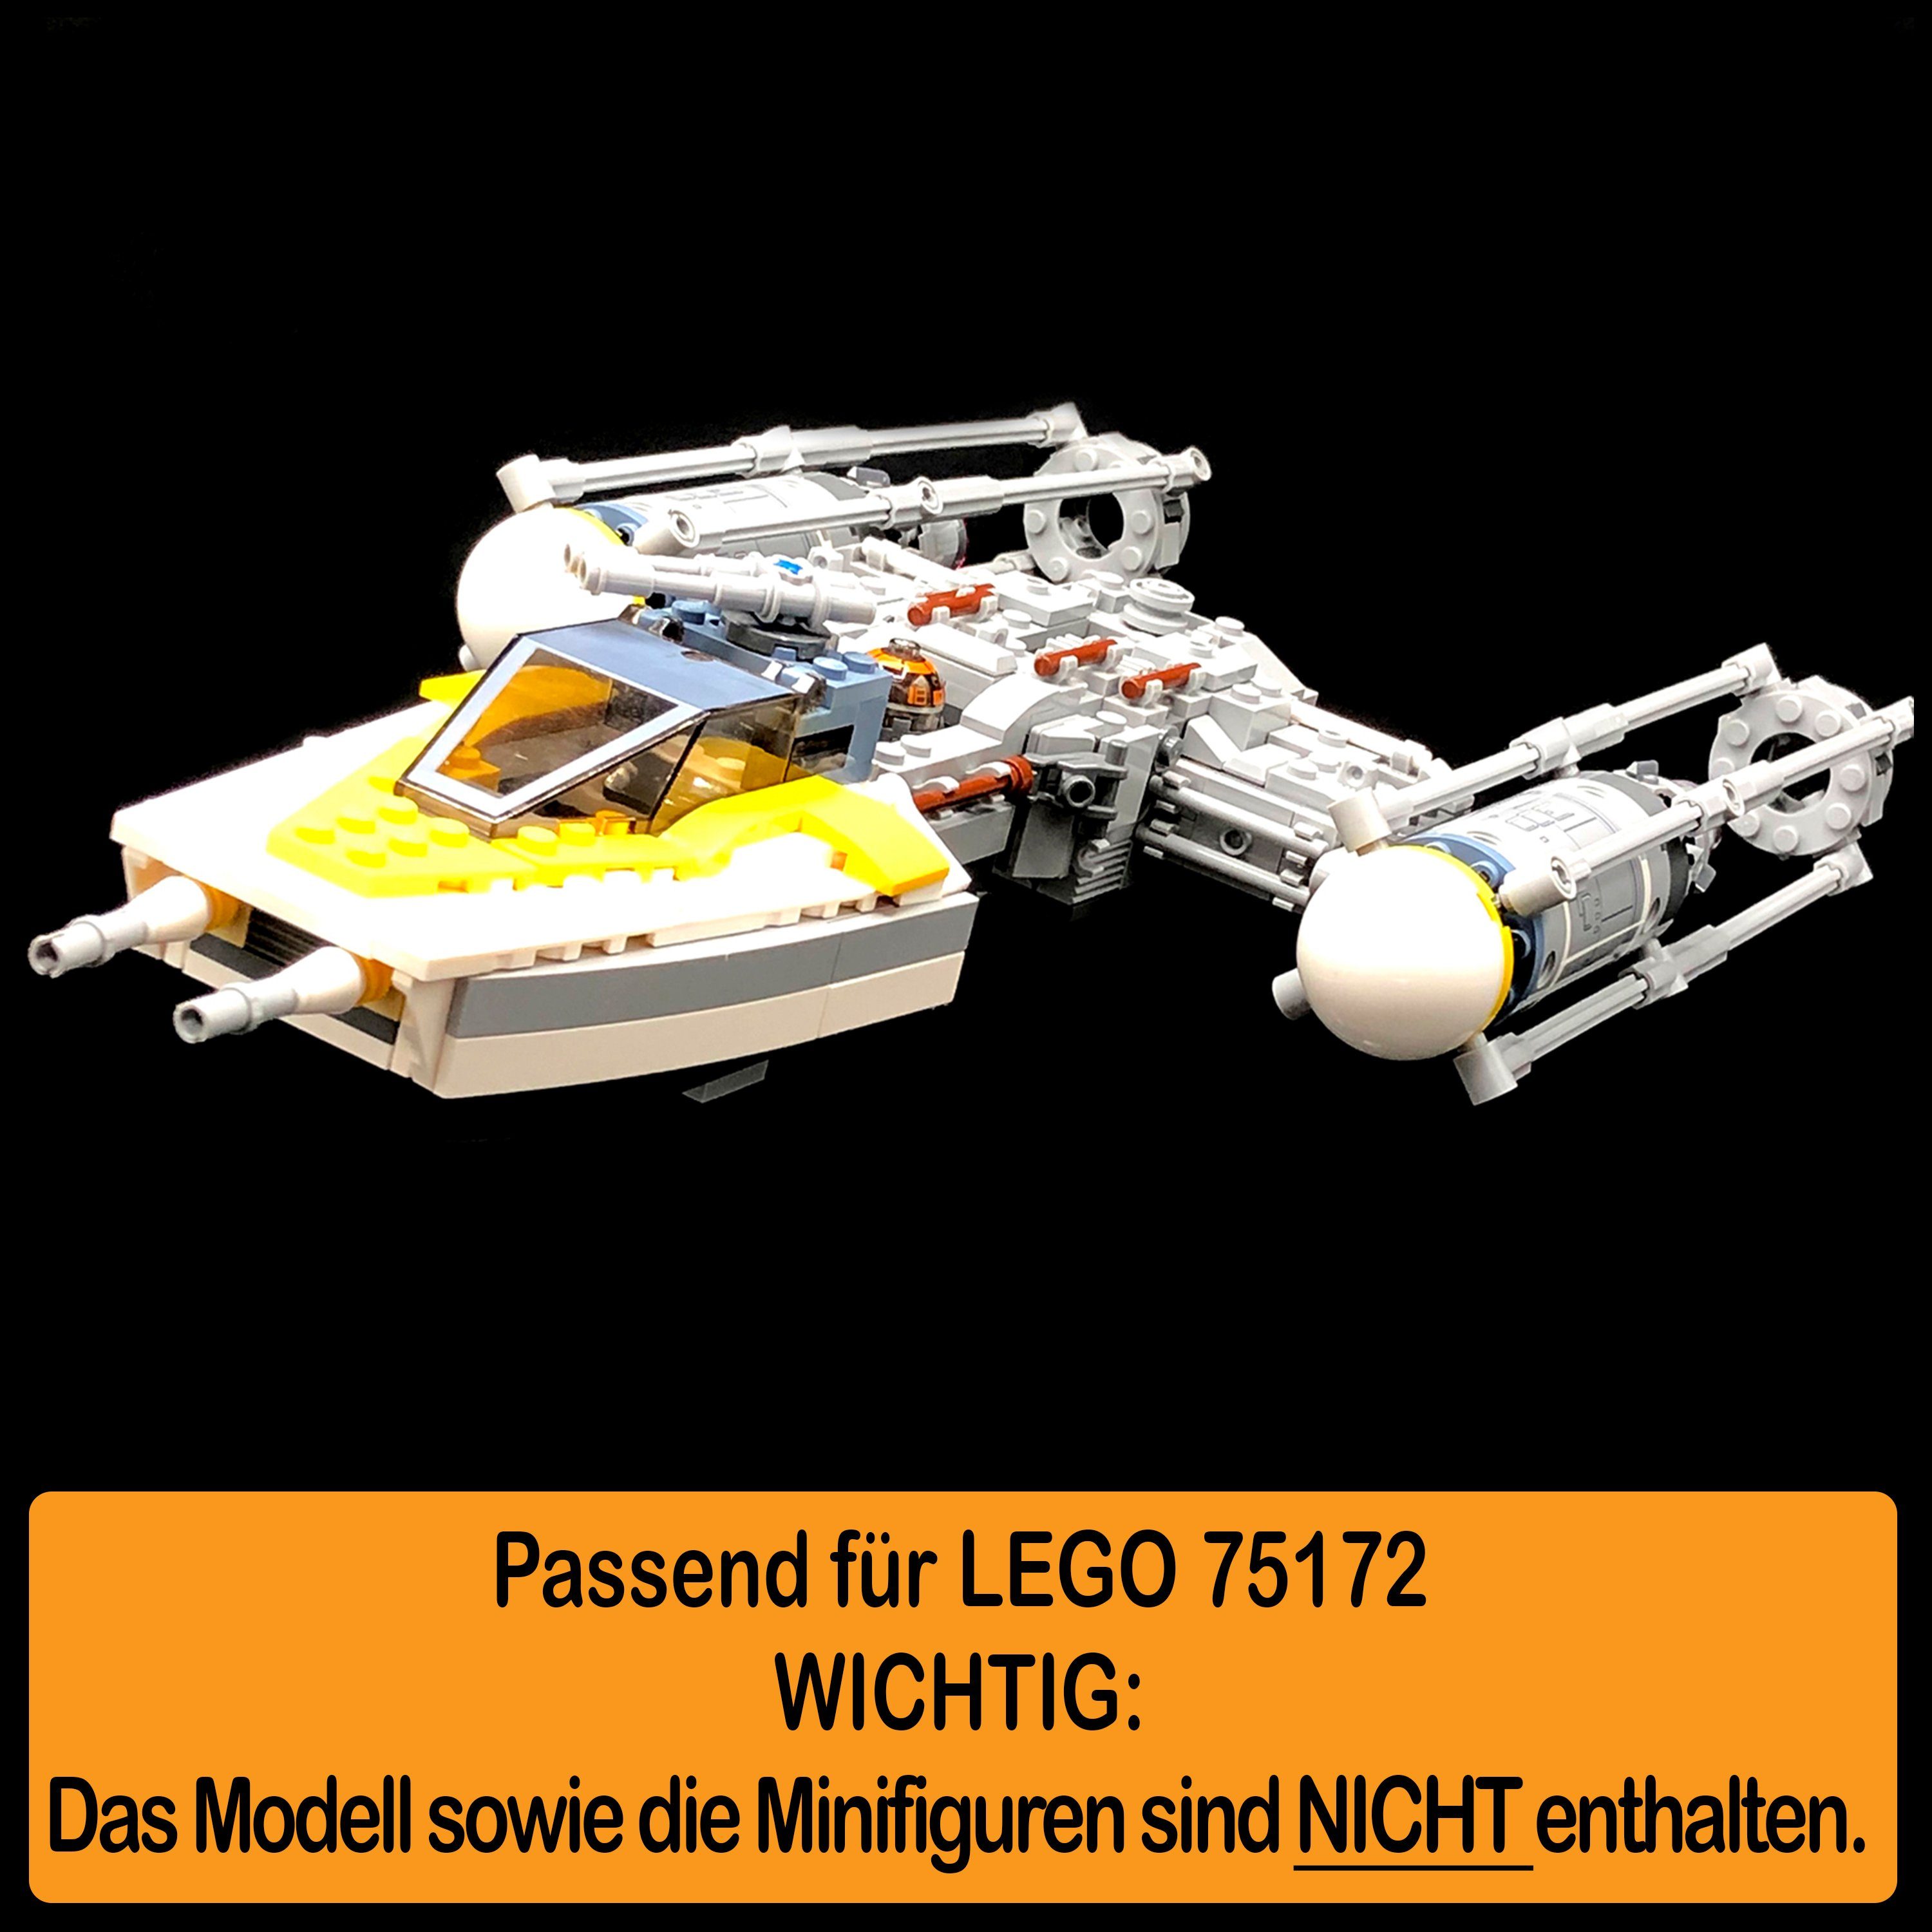 AREA17 Standfuß LEGO für einstellbar, zusammenbauen), Winkel in 75172 Germany selbst zum Acryl Stand Y-Wing Display (verschiedene Positionen Made Starfighter 100% und